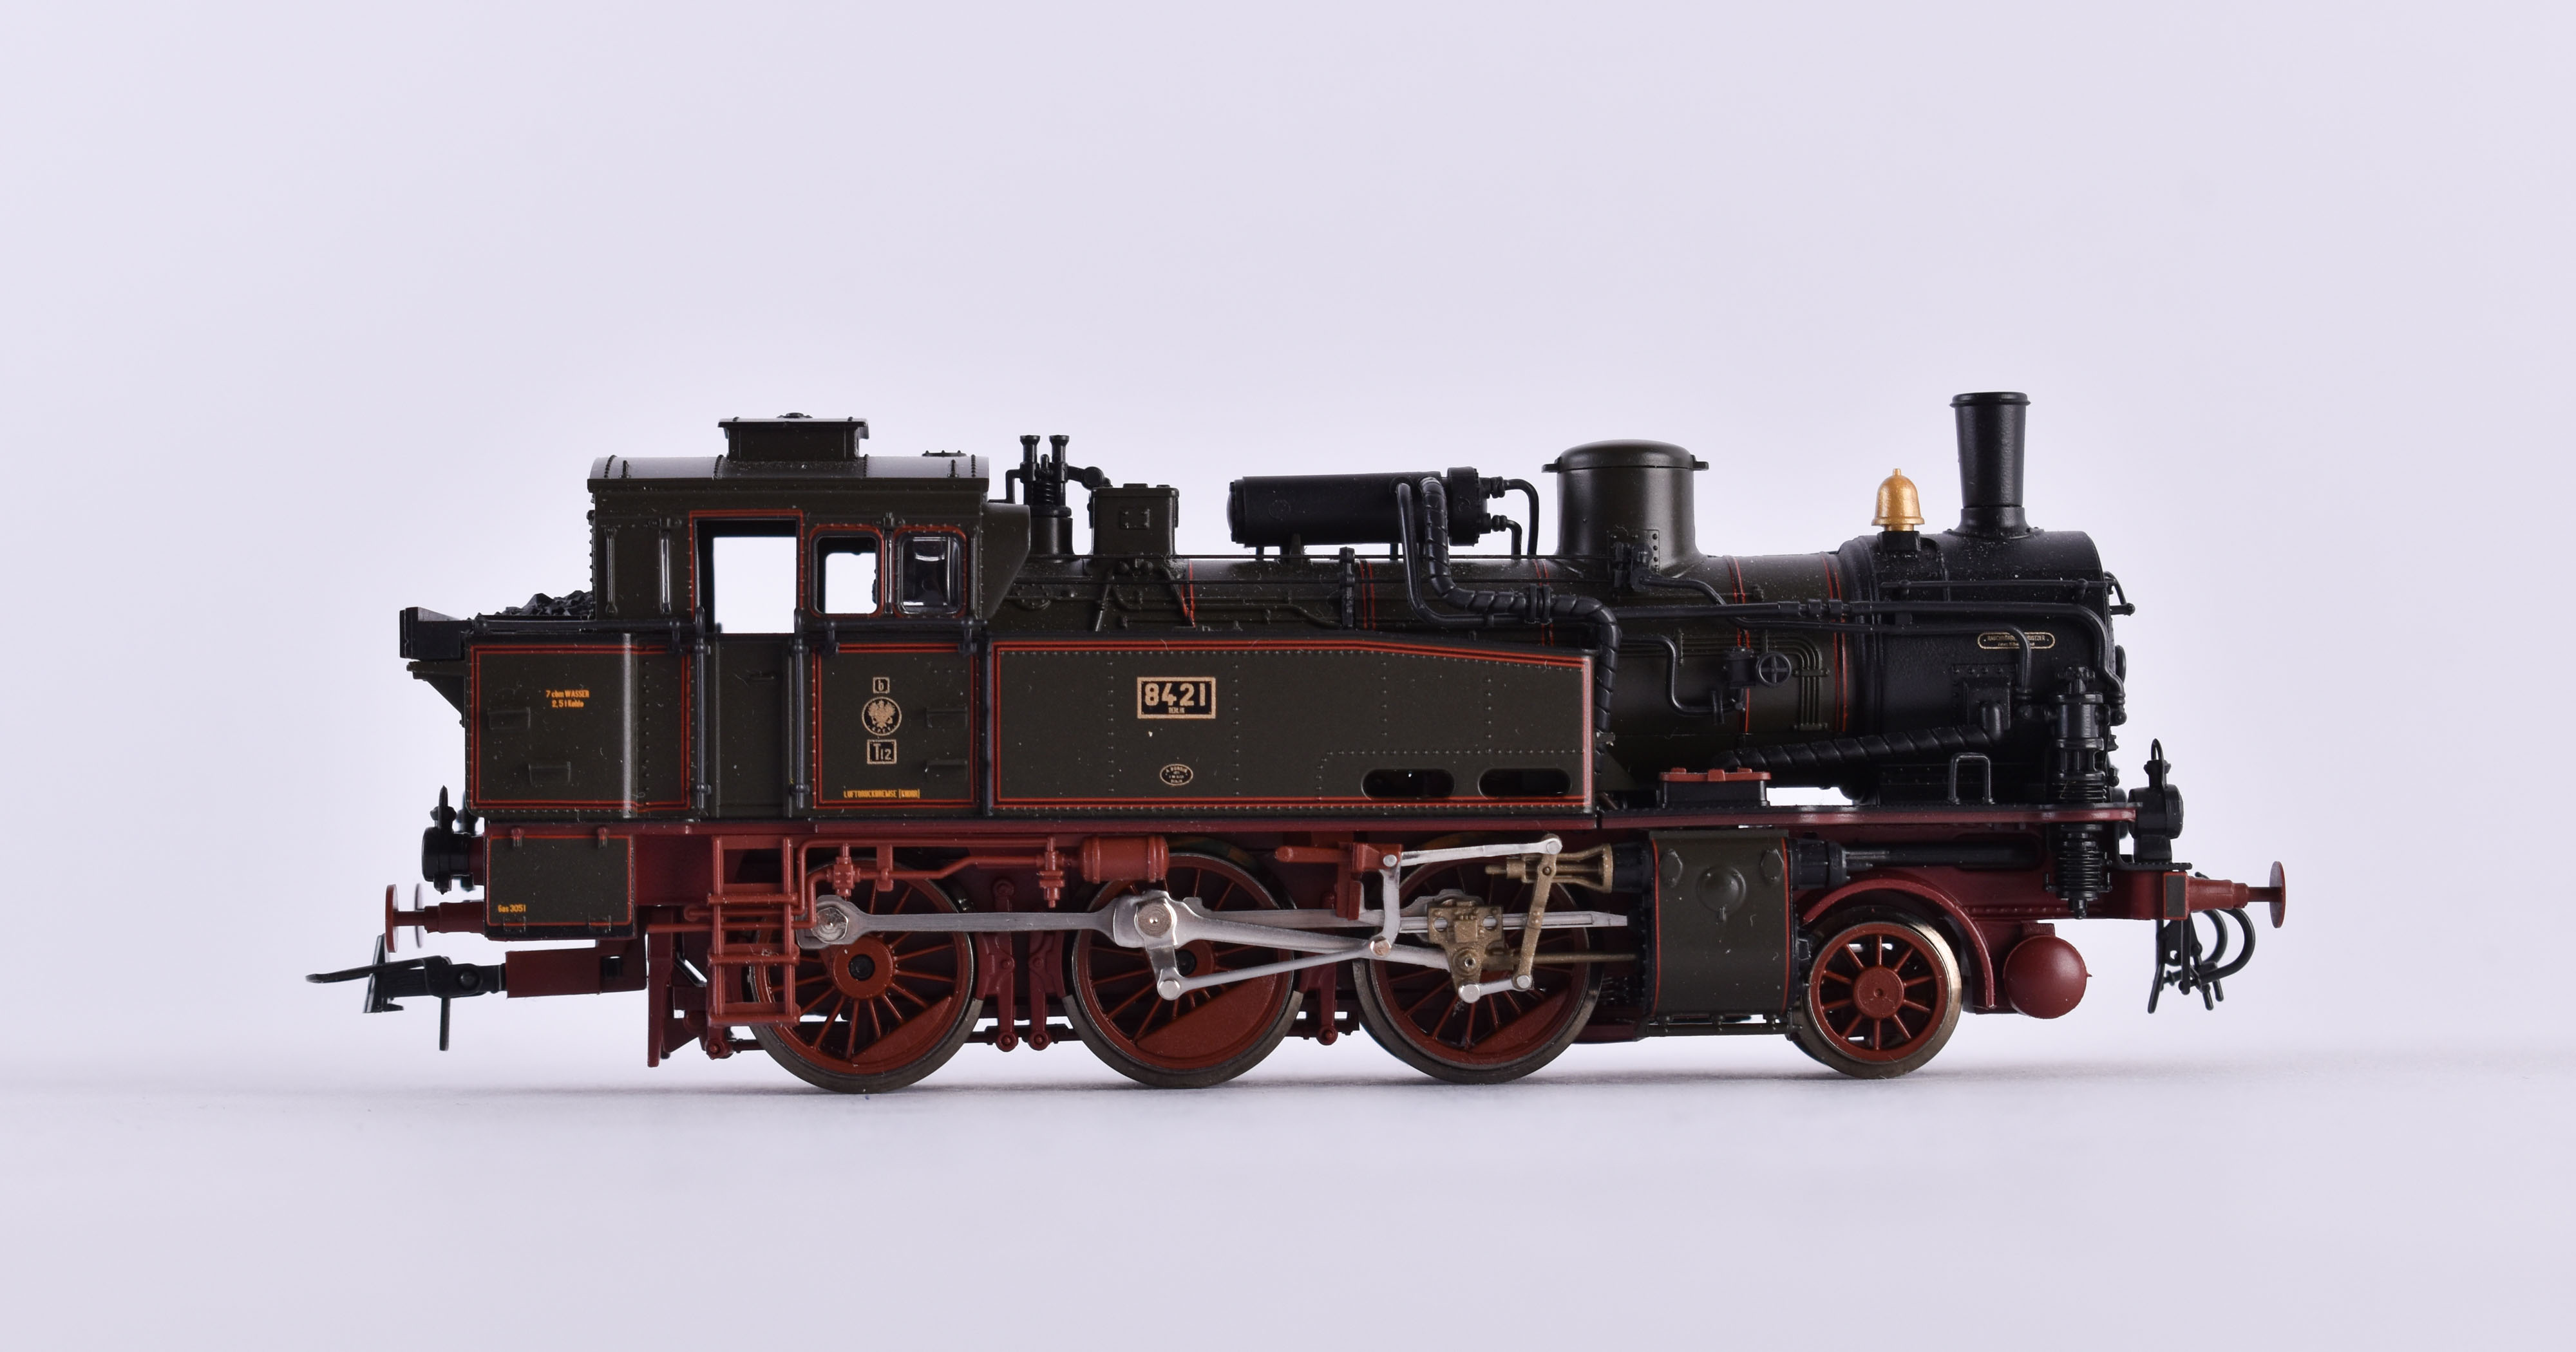 Dampflokomotive 8421 der Königlich Preußischen Eisenbahn-Verwaltung- Roco